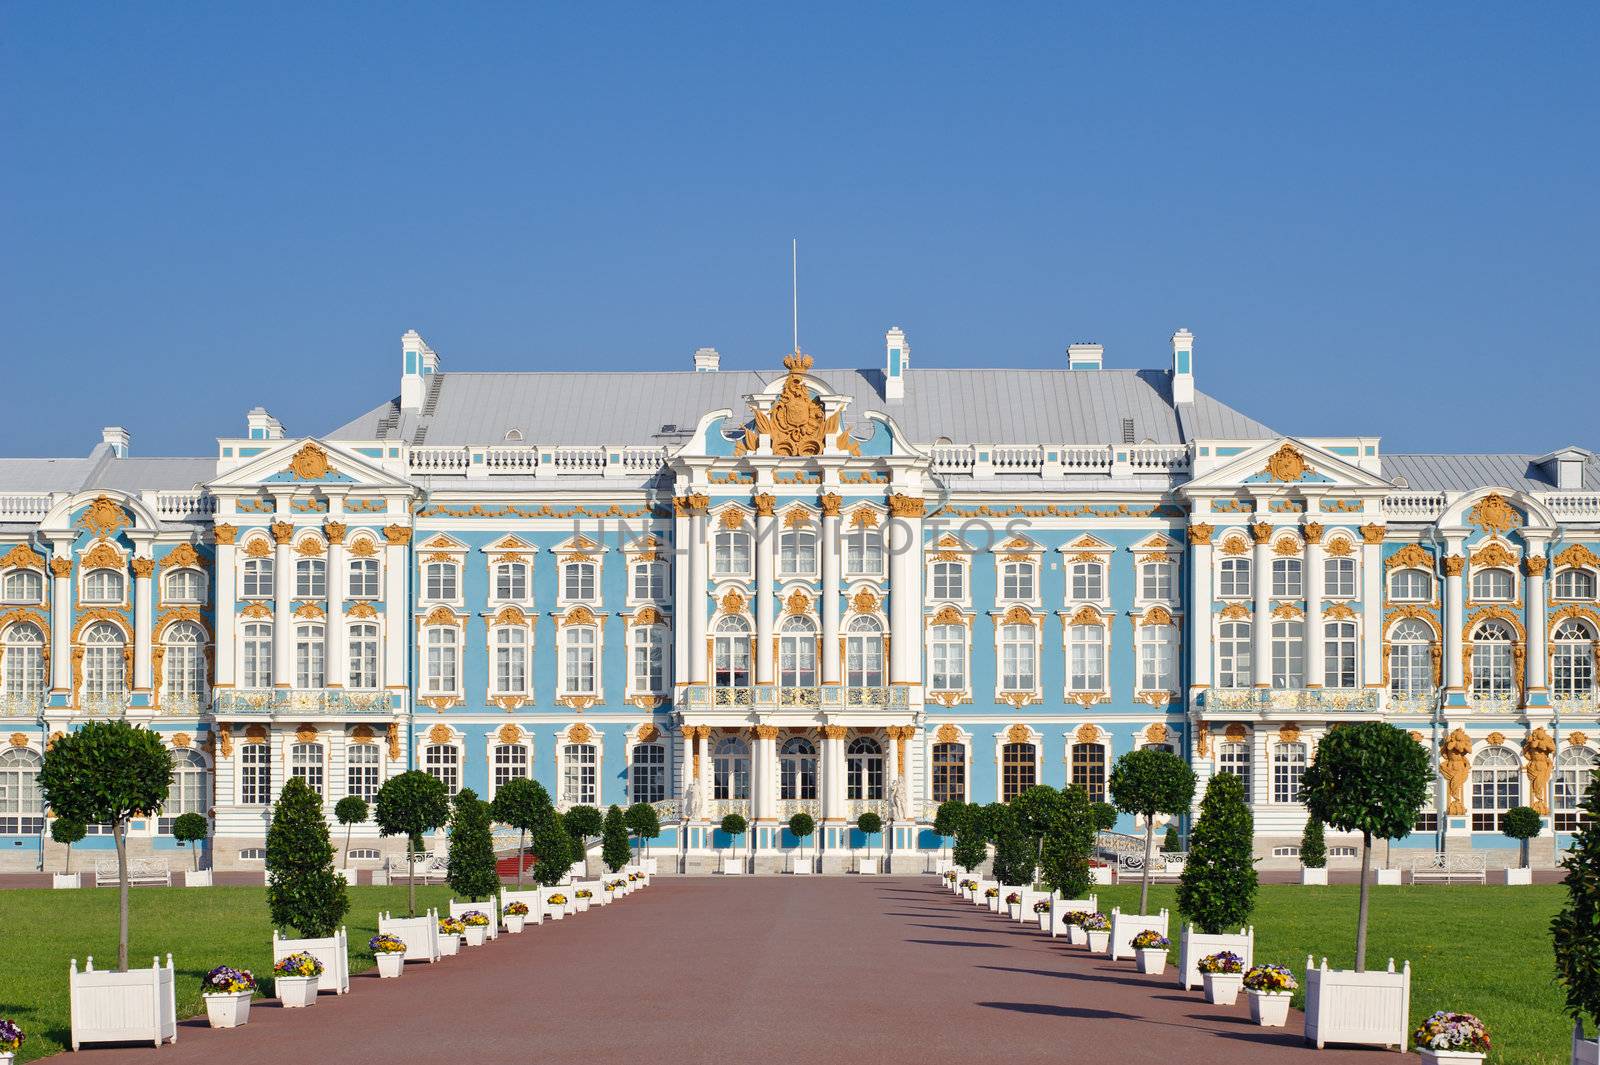 The Catherine Palace is the Baroque style, Tsarskoye Selo (Pushk by bashta